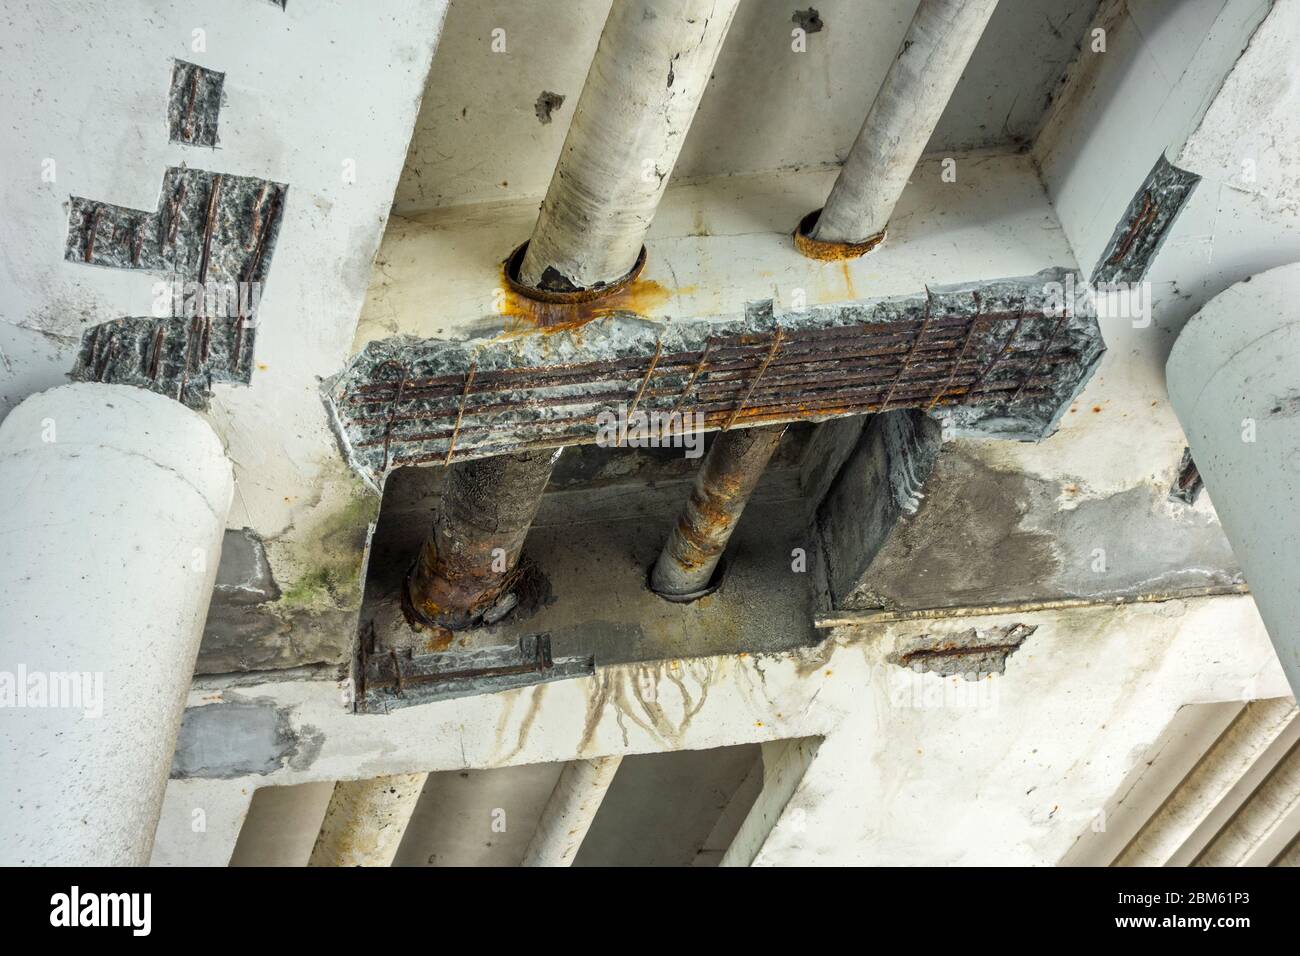 Reparaturarbeiten / Renovierung mit zerbröckeltem Beton und freiliegendem Stahlbeton bei Mariakerkebrug, 60er Jahre Brücke in Mariakerke, Ostflandern, Belgien Stockfoto